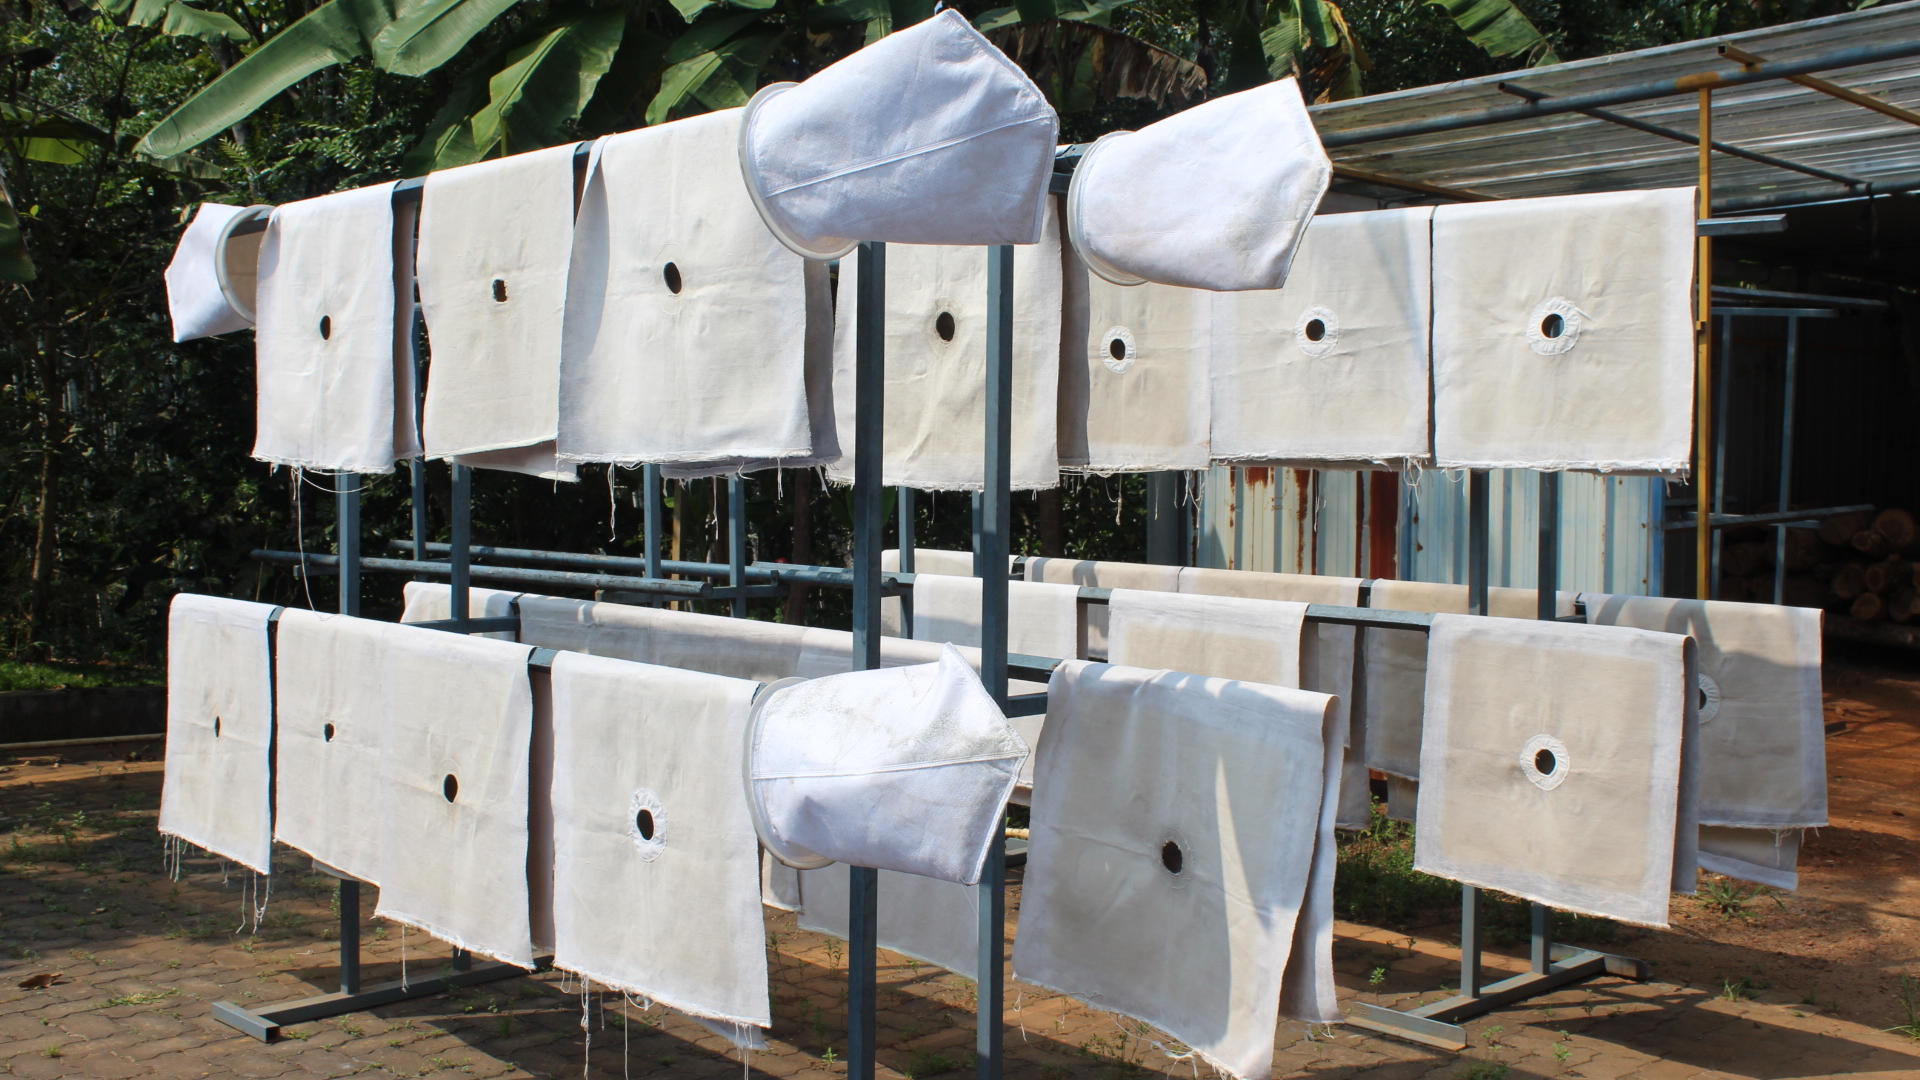 Sun drying filter cloths